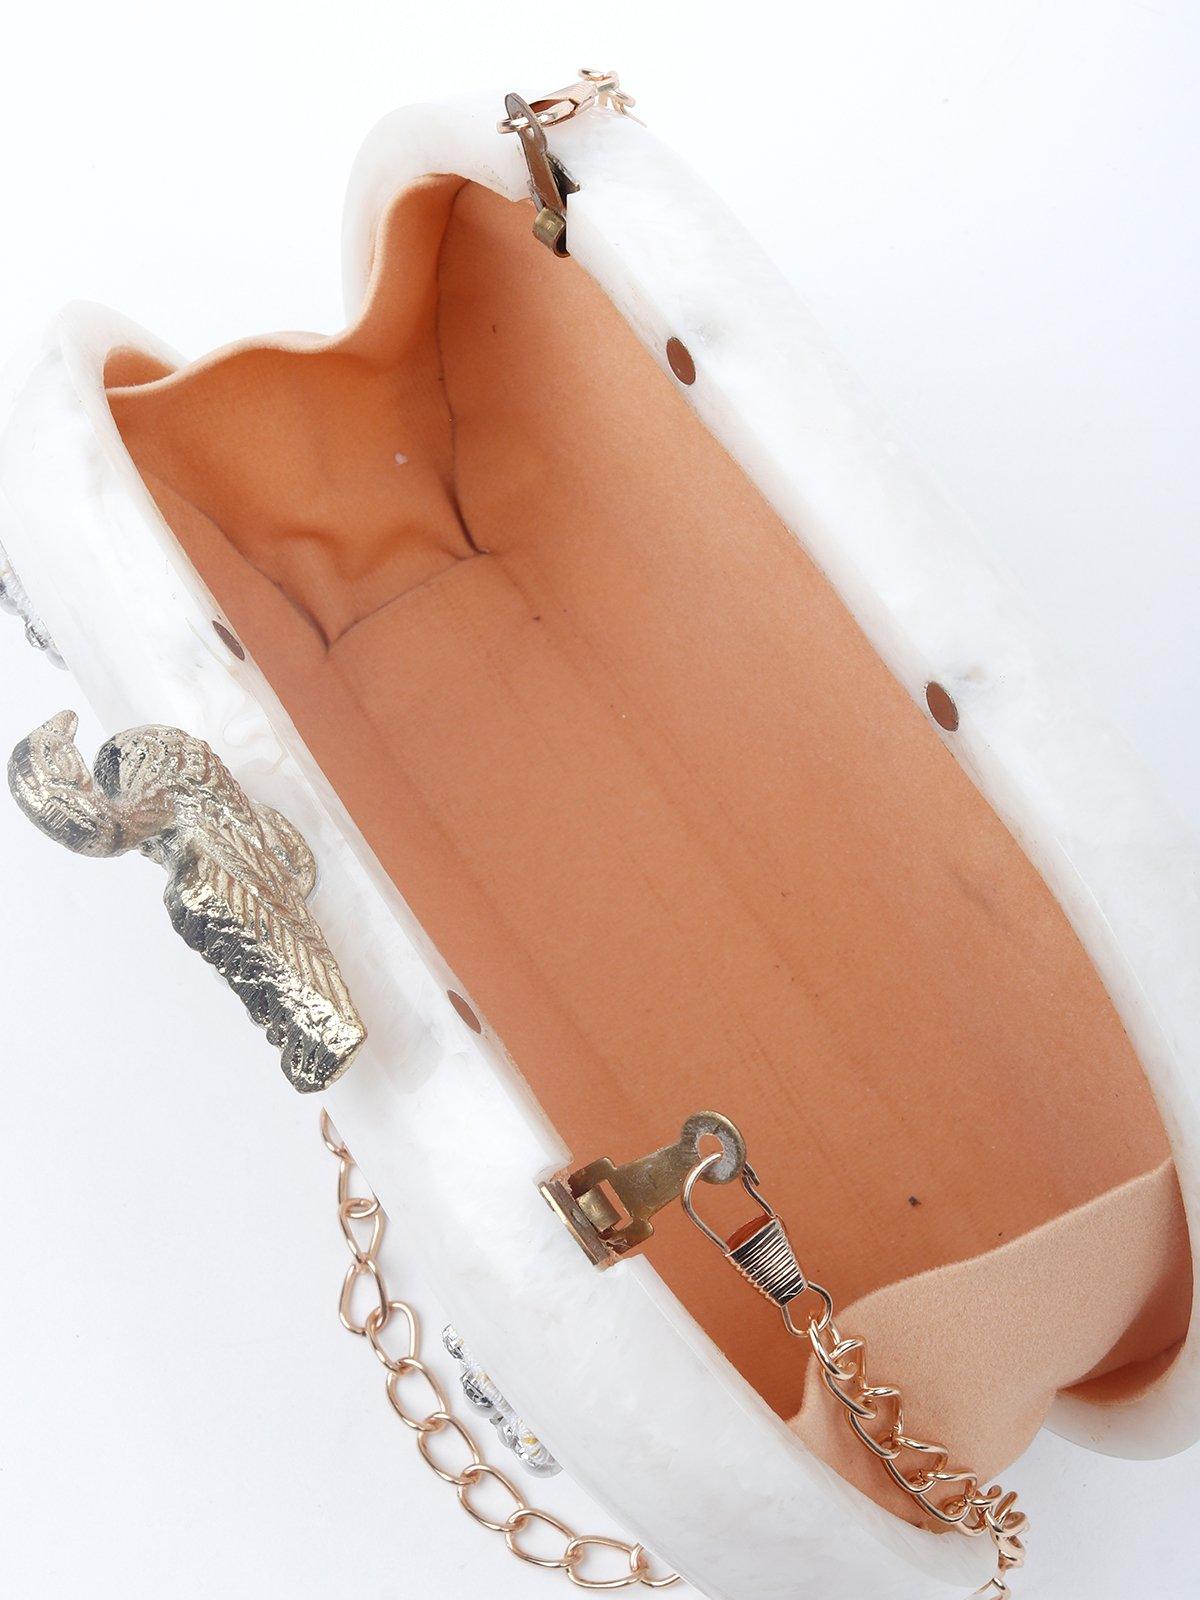 Swan clasp white crystal sling bag - Odette